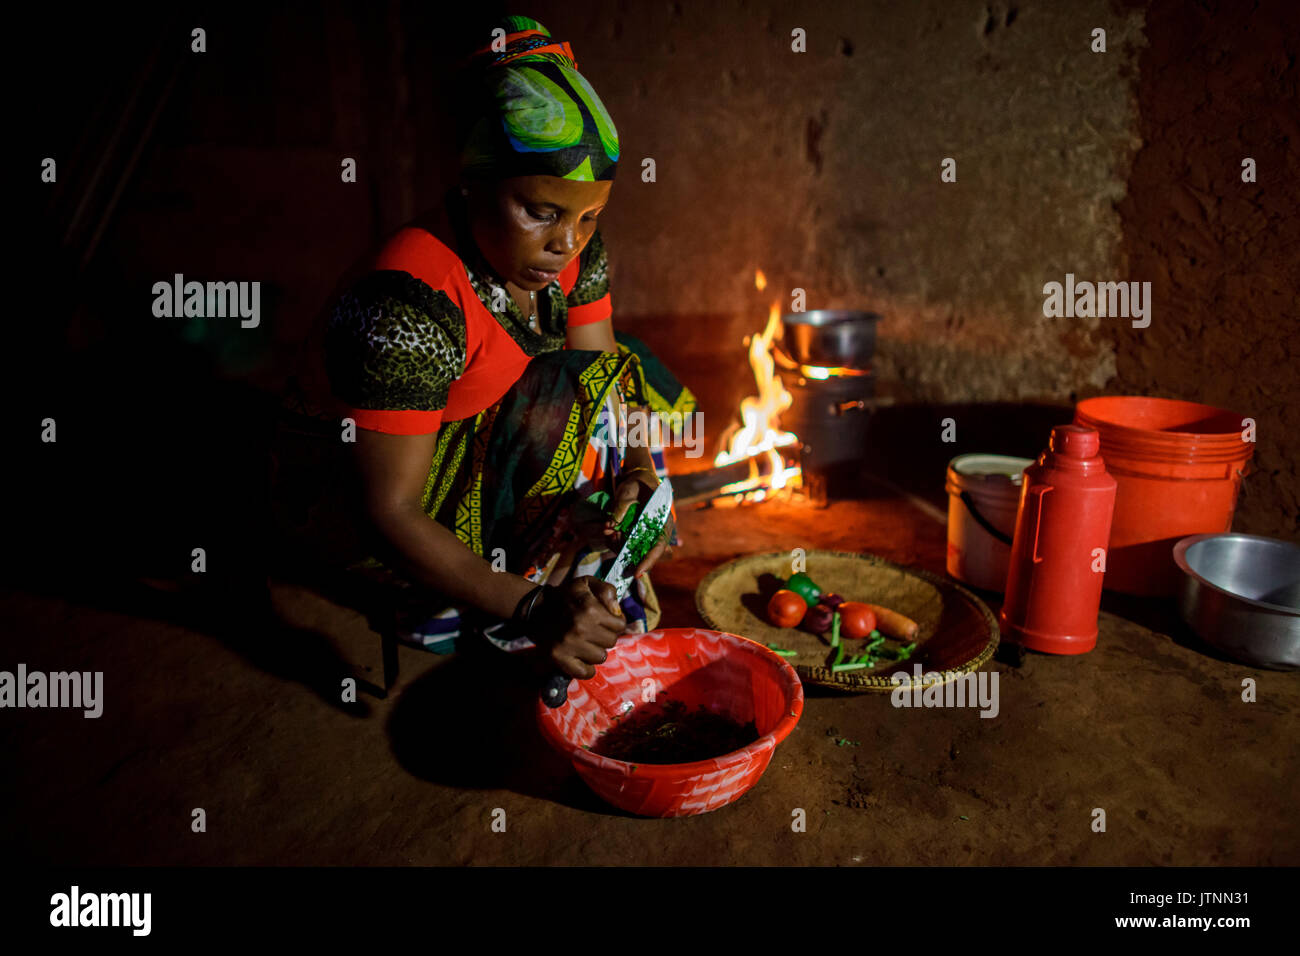 Mforo la Tanzanie, un village près de Moshi, Tanzanie. Sœur solaire entrepreneur Fatma Mziray cuire le dîner sur son fourneau propre qui utilise le bois. Fatma Mziray solaire est un entrepreneur qui vend à la fois Sœur cookstoves propre et lanternes solaires. Fatma a entendu parler du d'une Sœur solaire cookstoves adjointe au développement et a décidé d'essayer une Banque D'Images